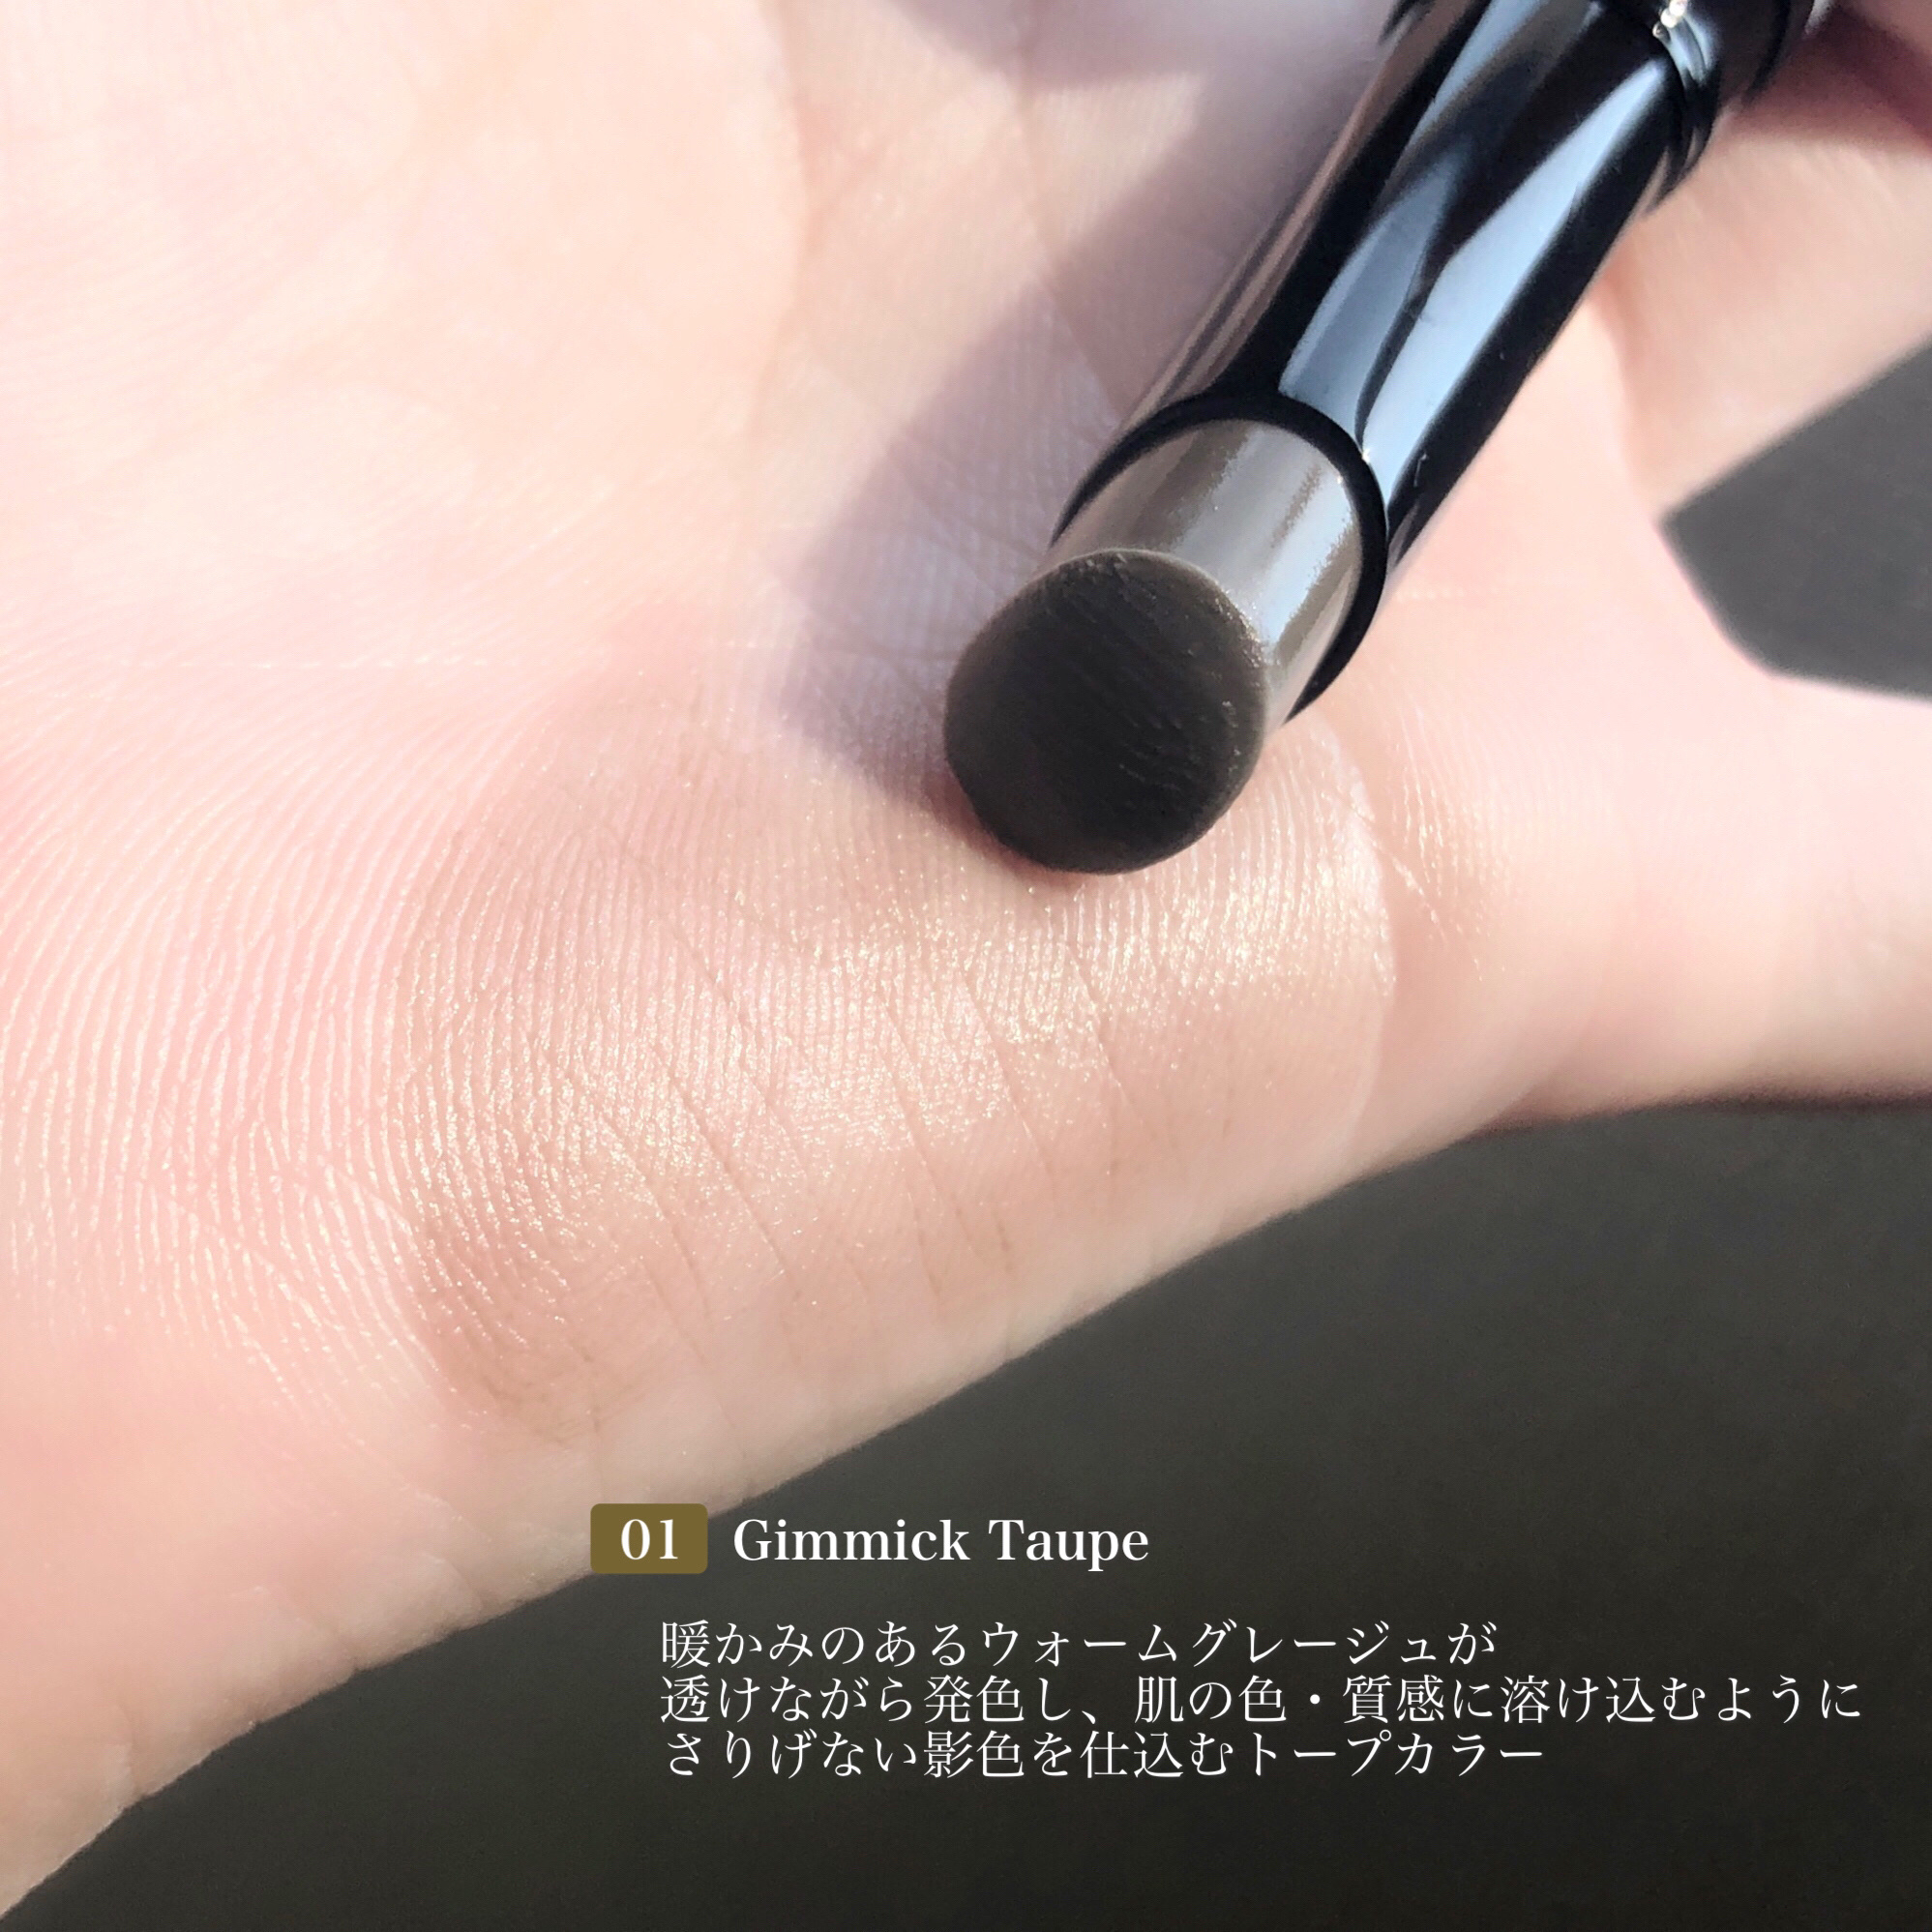 KANEBO カネボウ シャドウオンフェース 01 Gimmick Taupe 通販